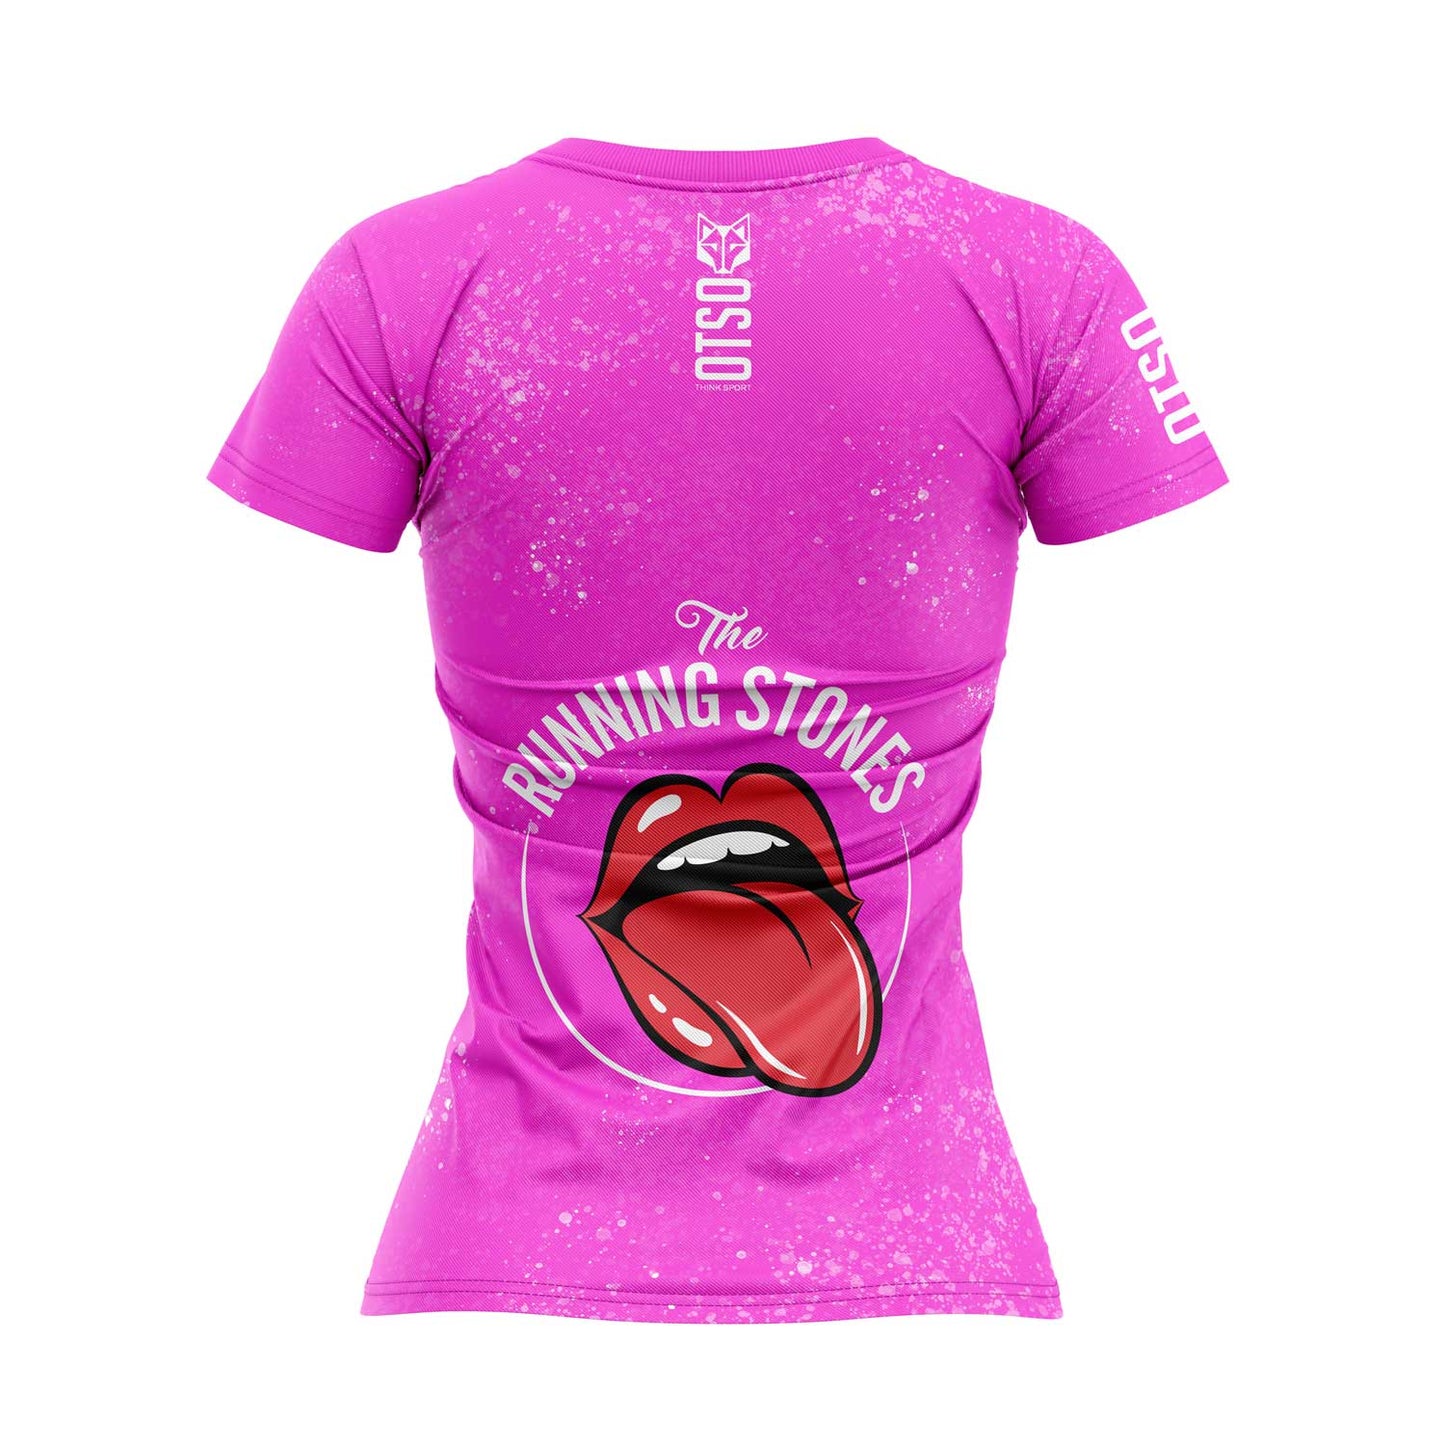 Camiseta manga corta mujer - Running Stones Pink